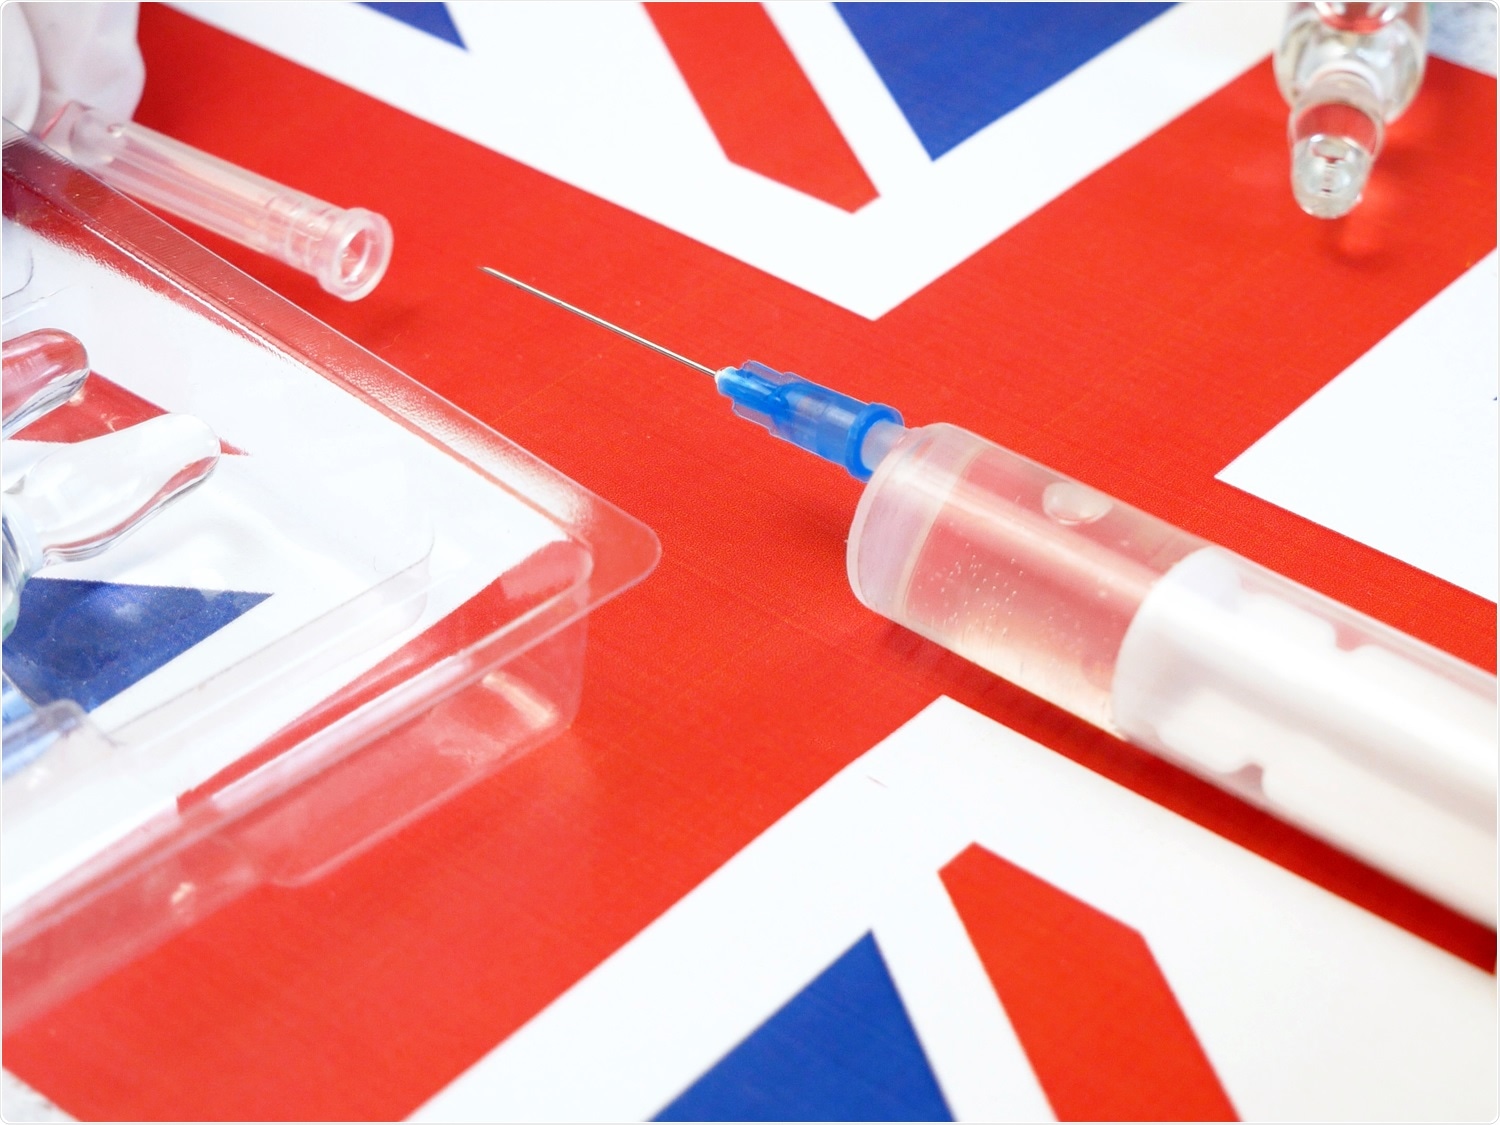 Βρετανία: Ένας στους δέκα κατοίκους του Λονδίνου είναι πιθανό να έχει μολυνθεί από την COVID-19